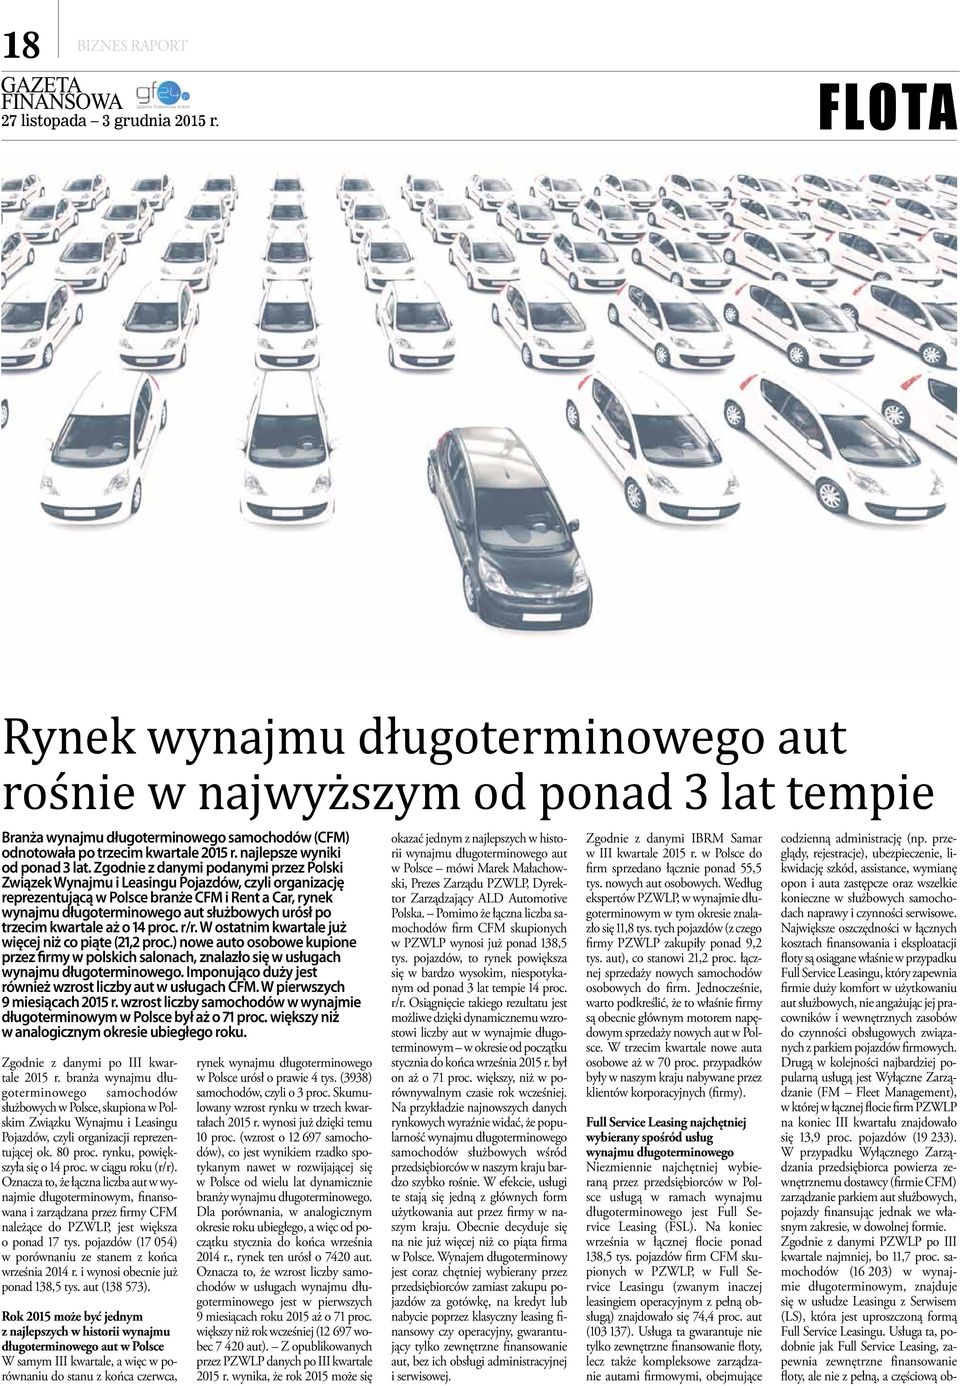 Zgodnie z danymi podanymi przez Polski Związek Wynajmu i u Pojazdów, czyli organizację reprezentującą w Polsce branże CFM i Rent a Car, rynek wynajmu długoterminowego aut służbowych urósł po trzecim